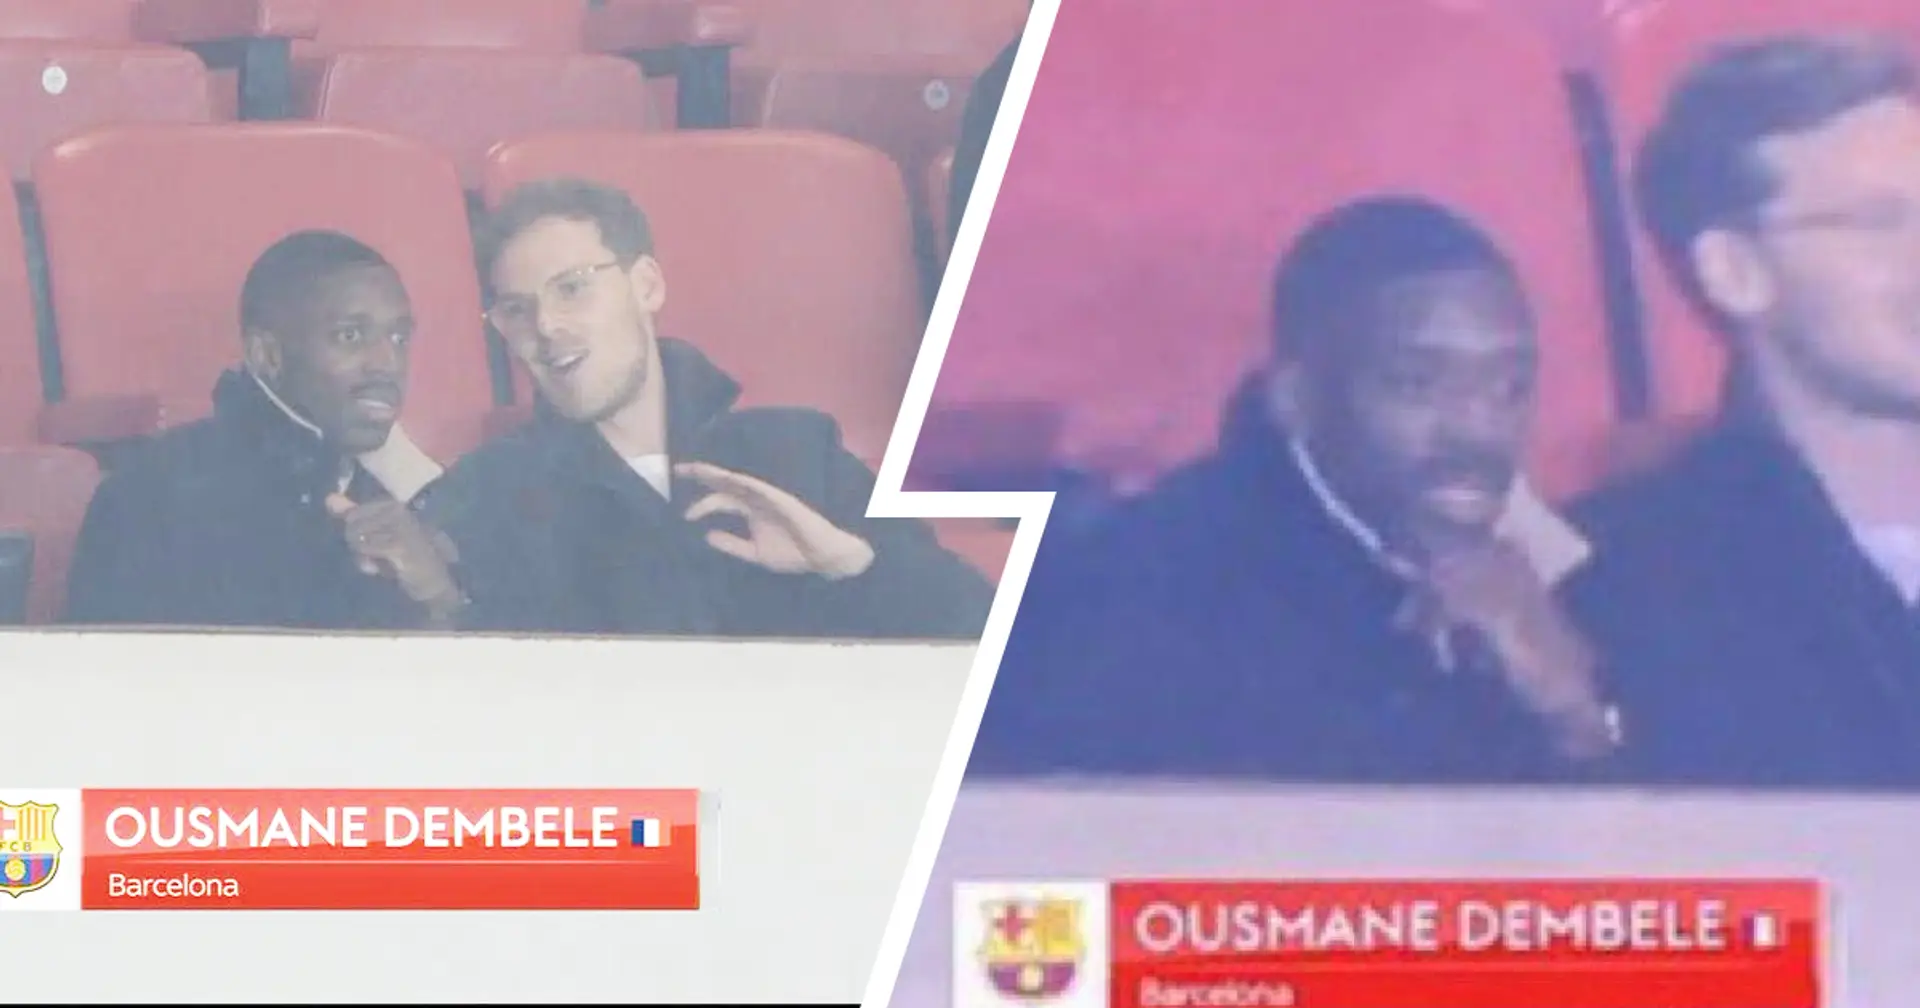 "Des choses que je ne m'attendais pas à voir": Dembele repéré dans les tribunes en train de regarder le match de championnat